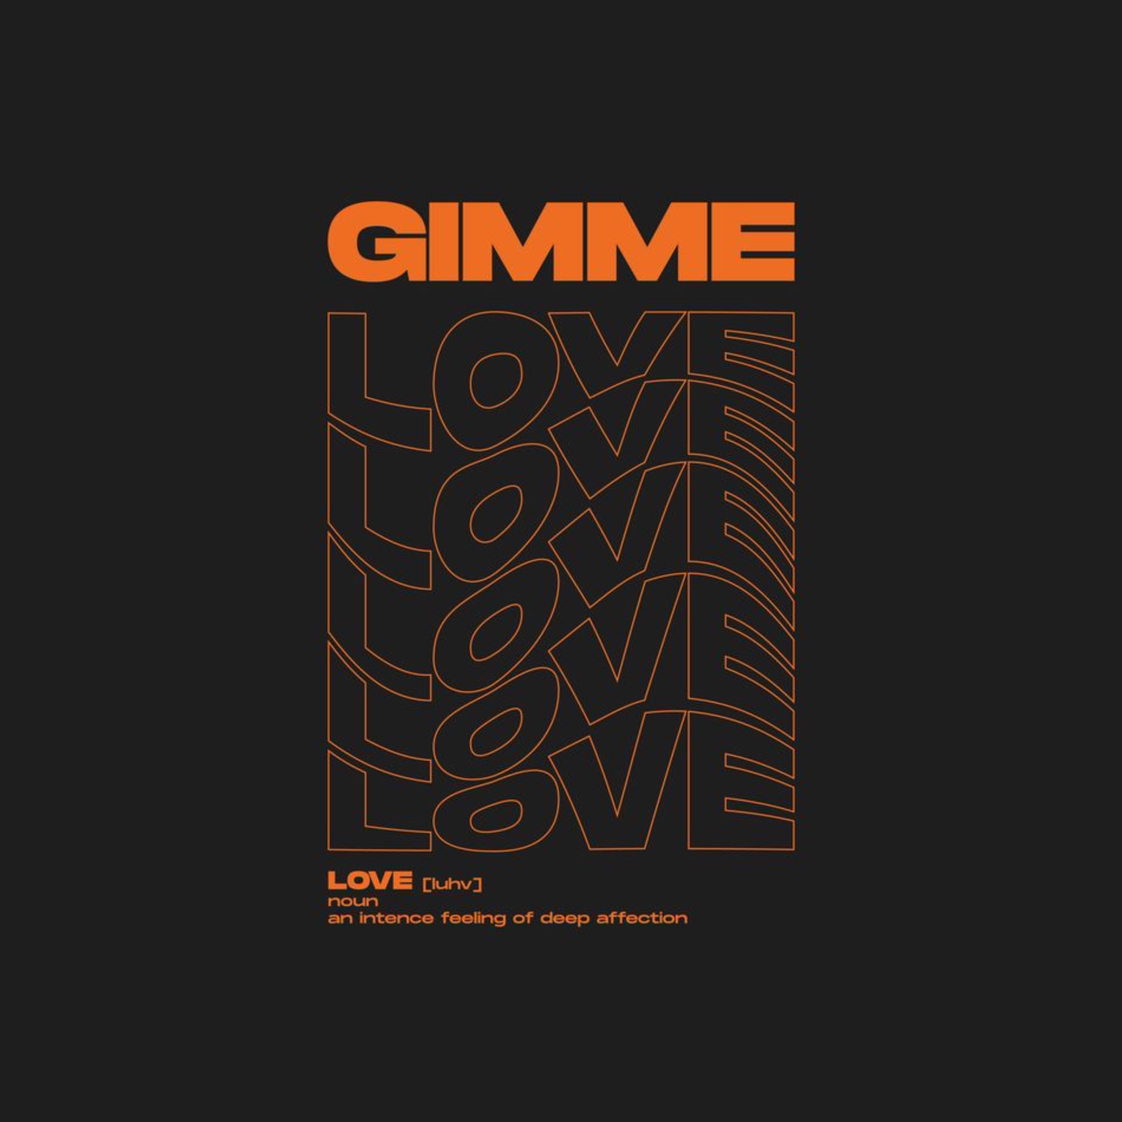 Stiahnuť ▼ GIMME LOVE